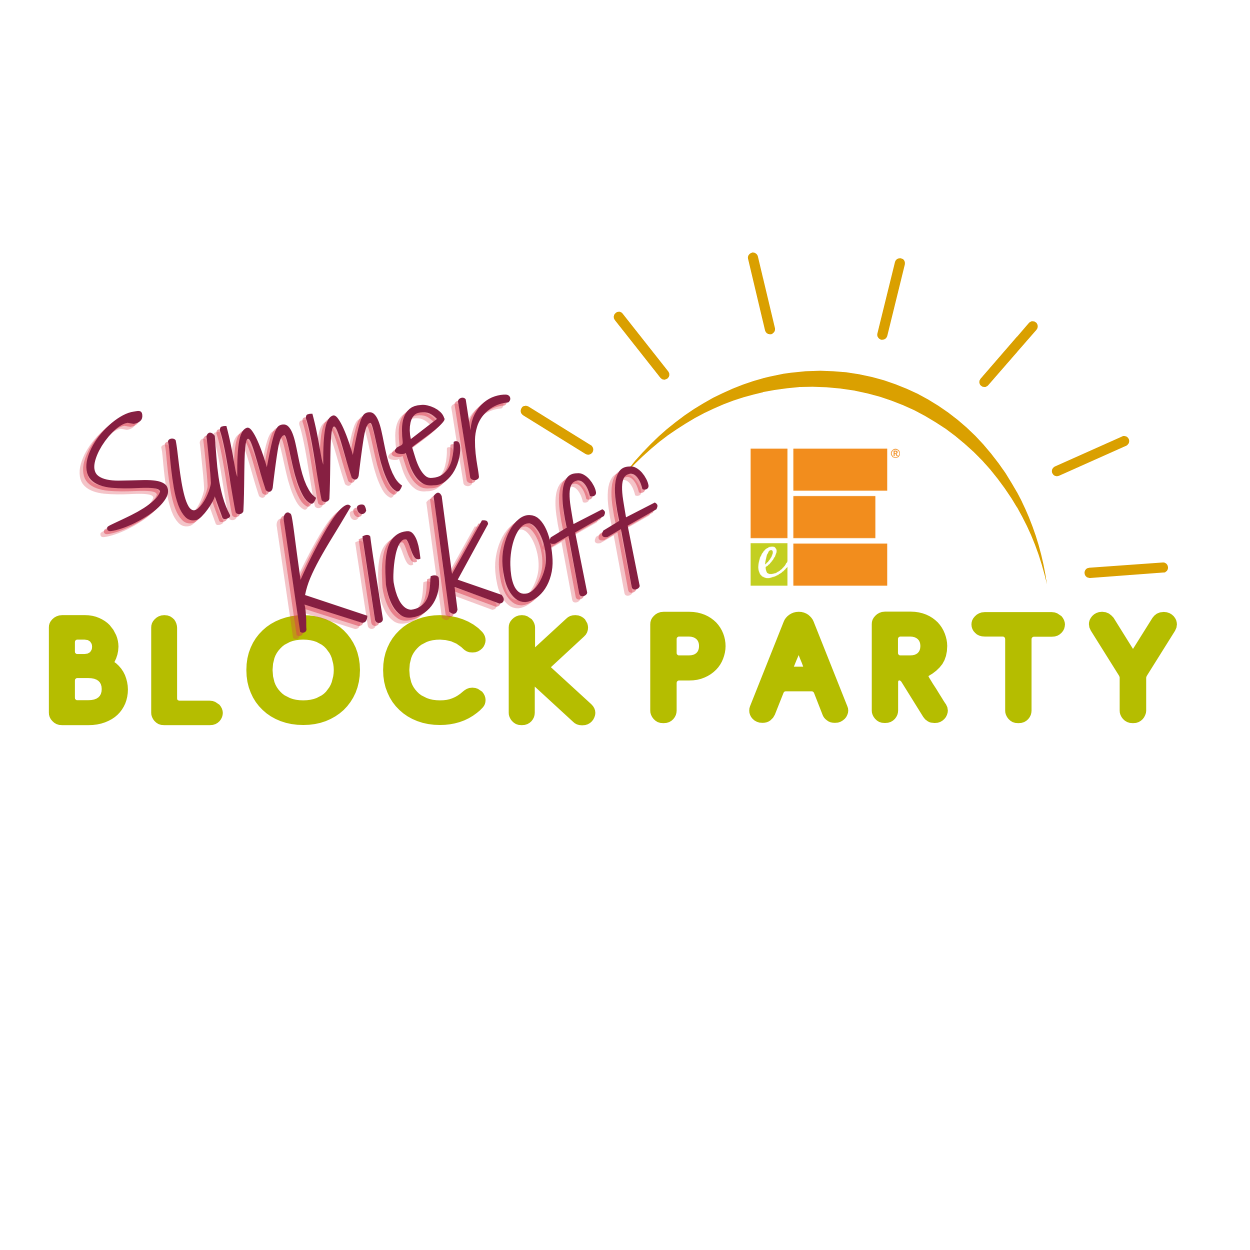 The summer kickoff Block Party logo